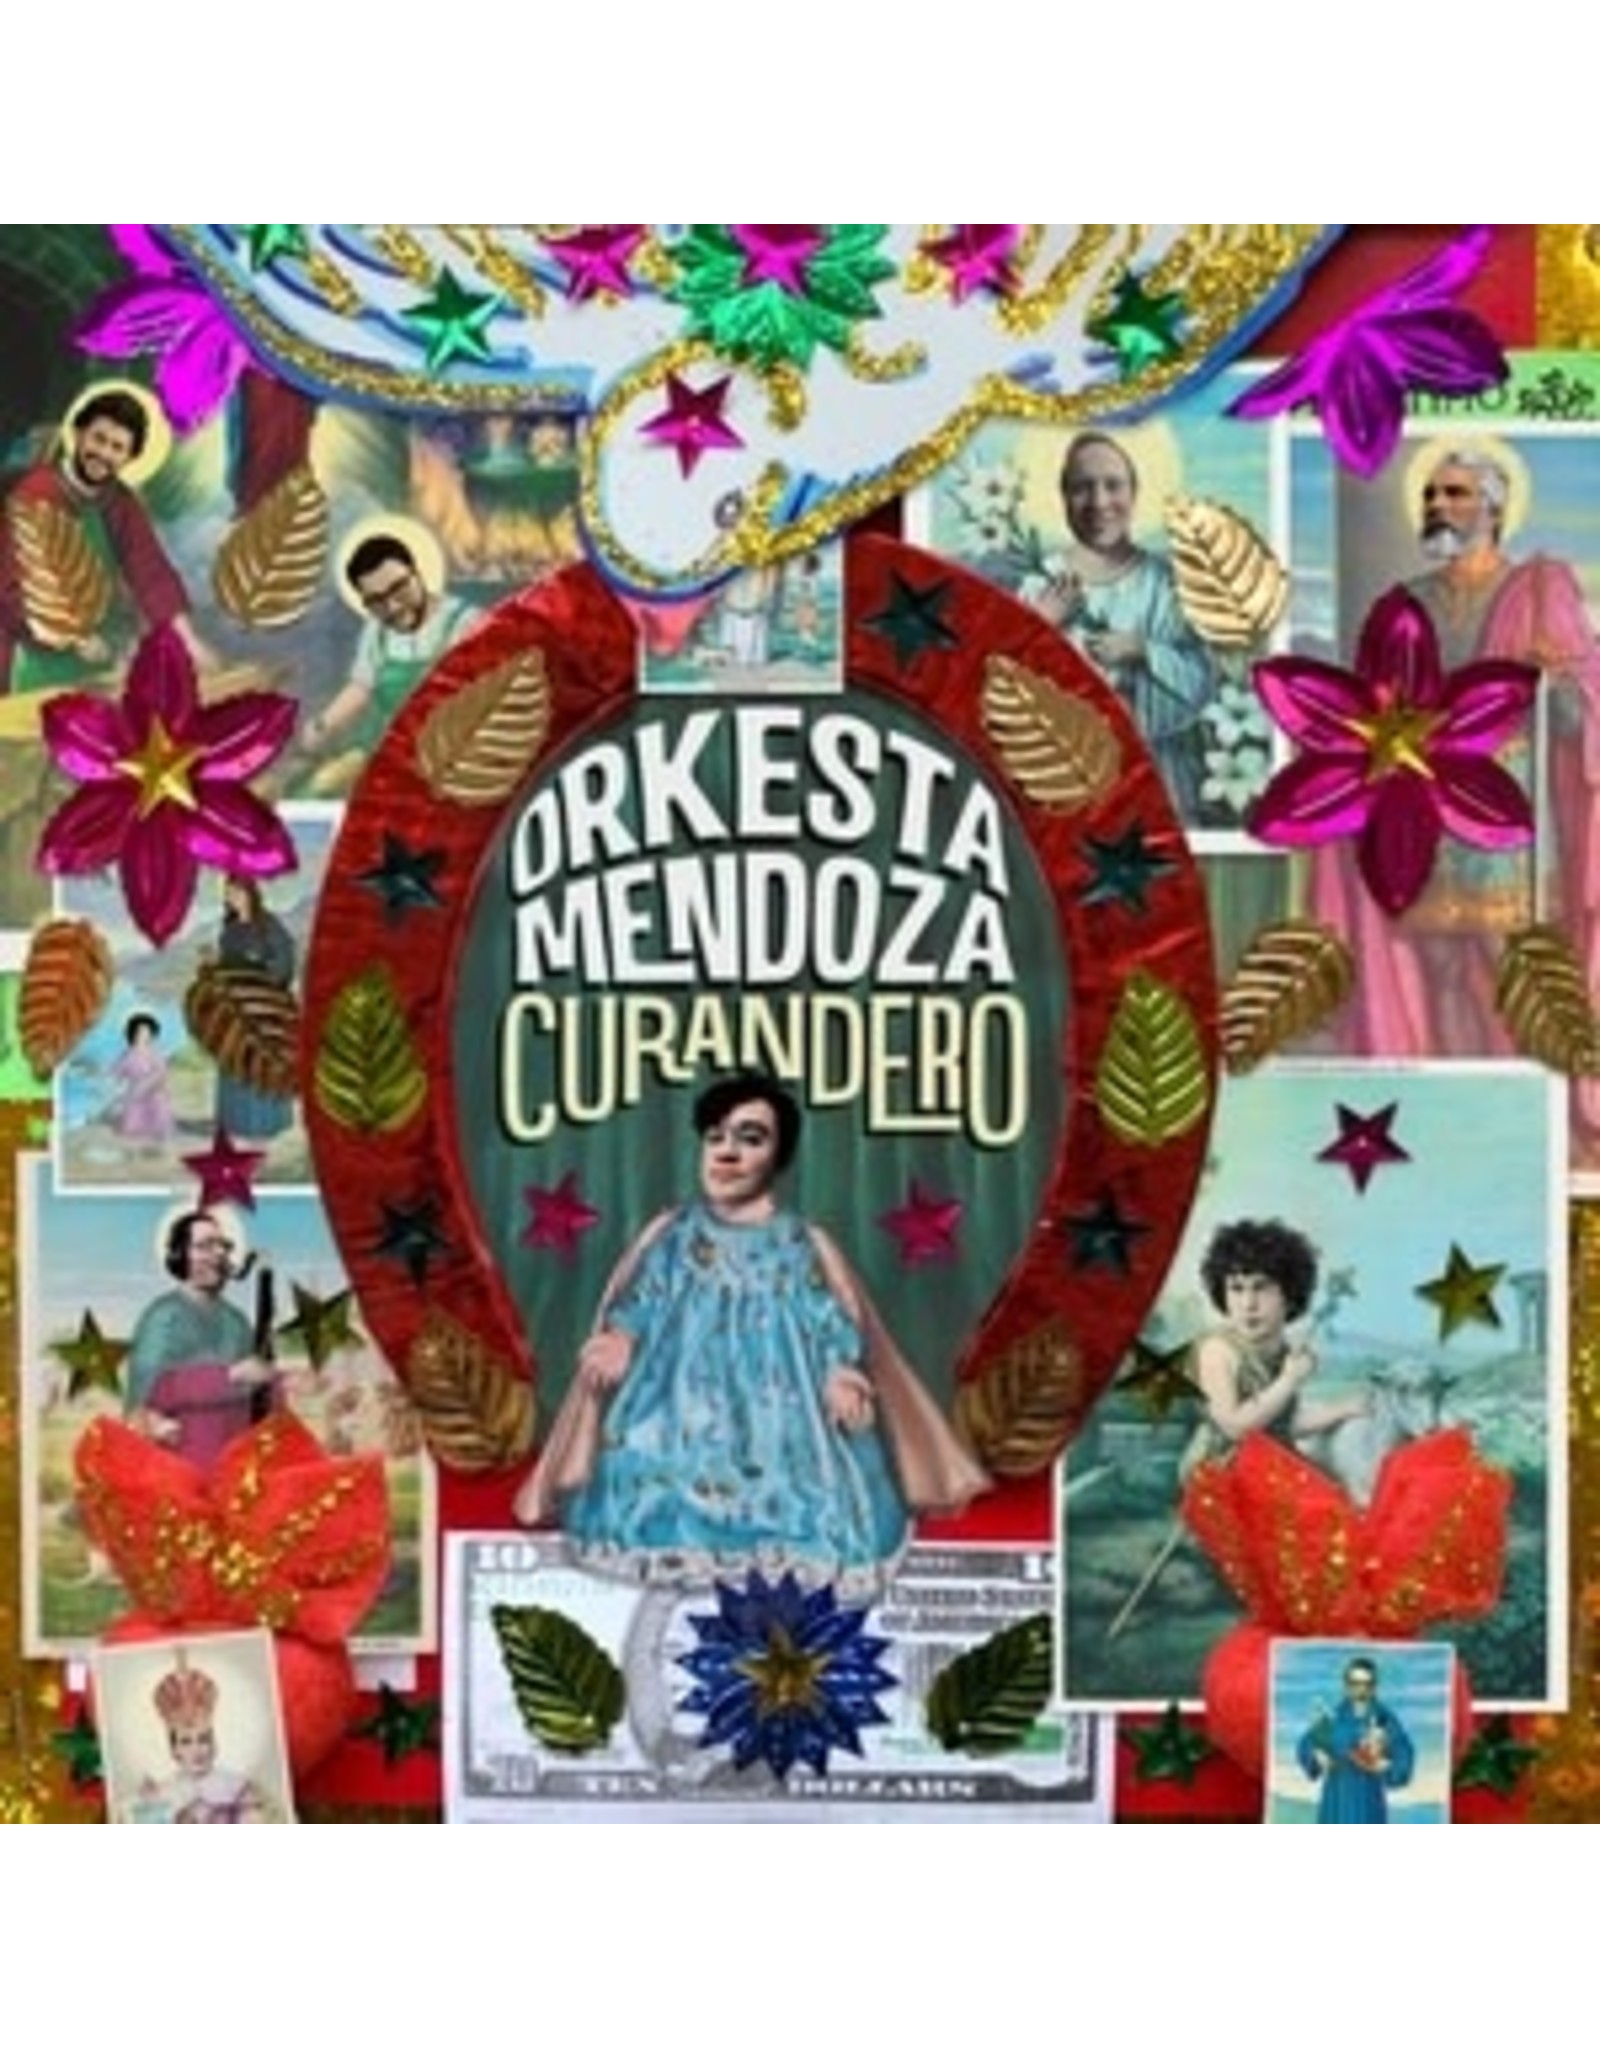 New Vinyl Orkesta Mendoza - Curandero LP